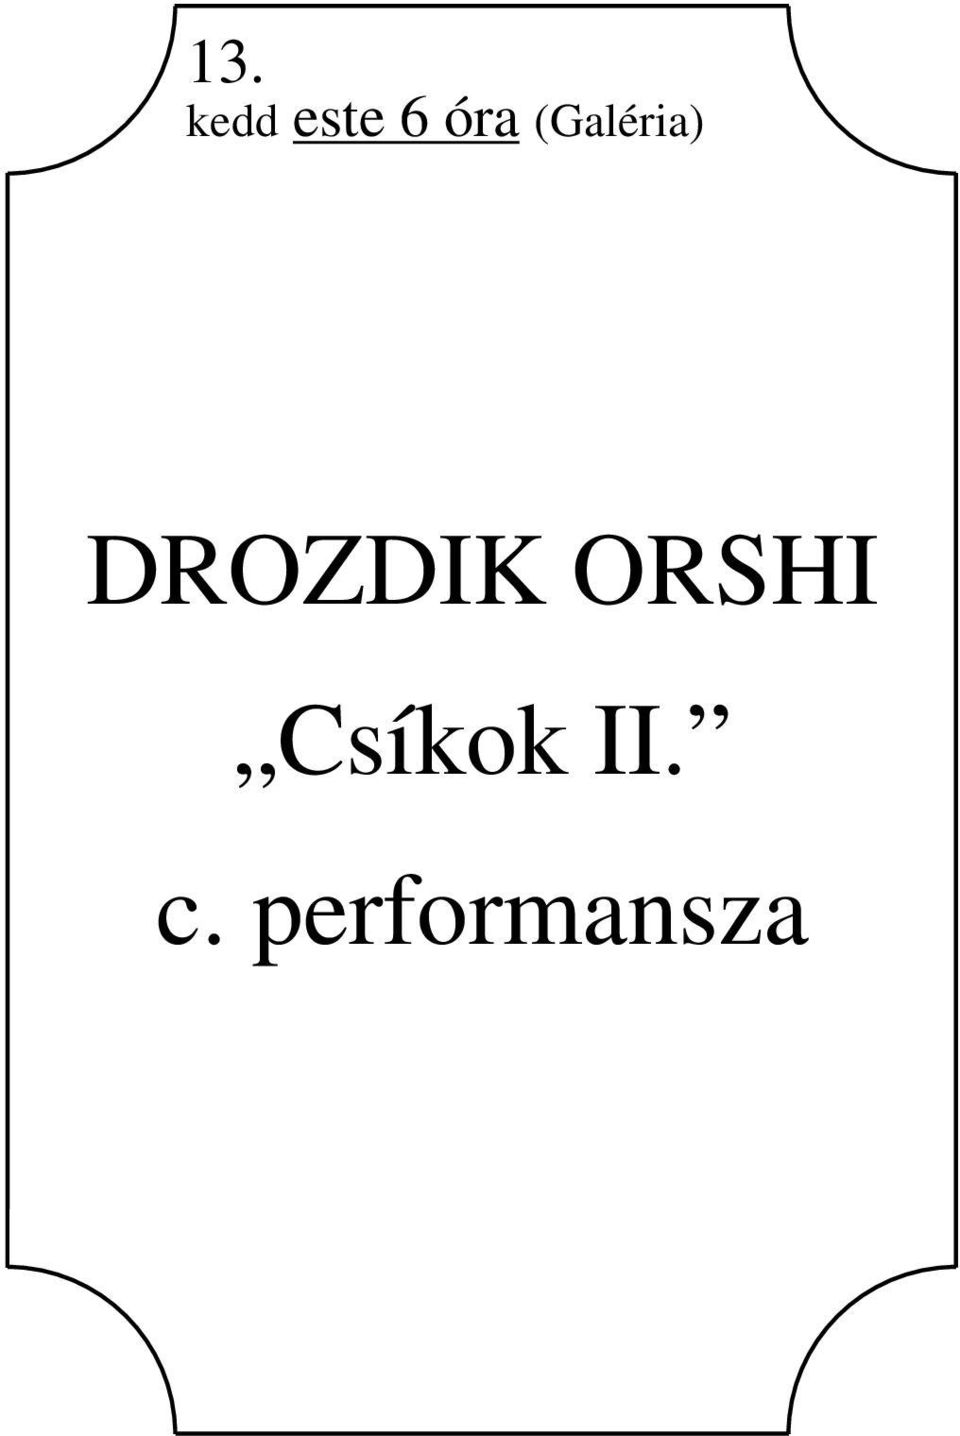 DROZDIK ORSHI